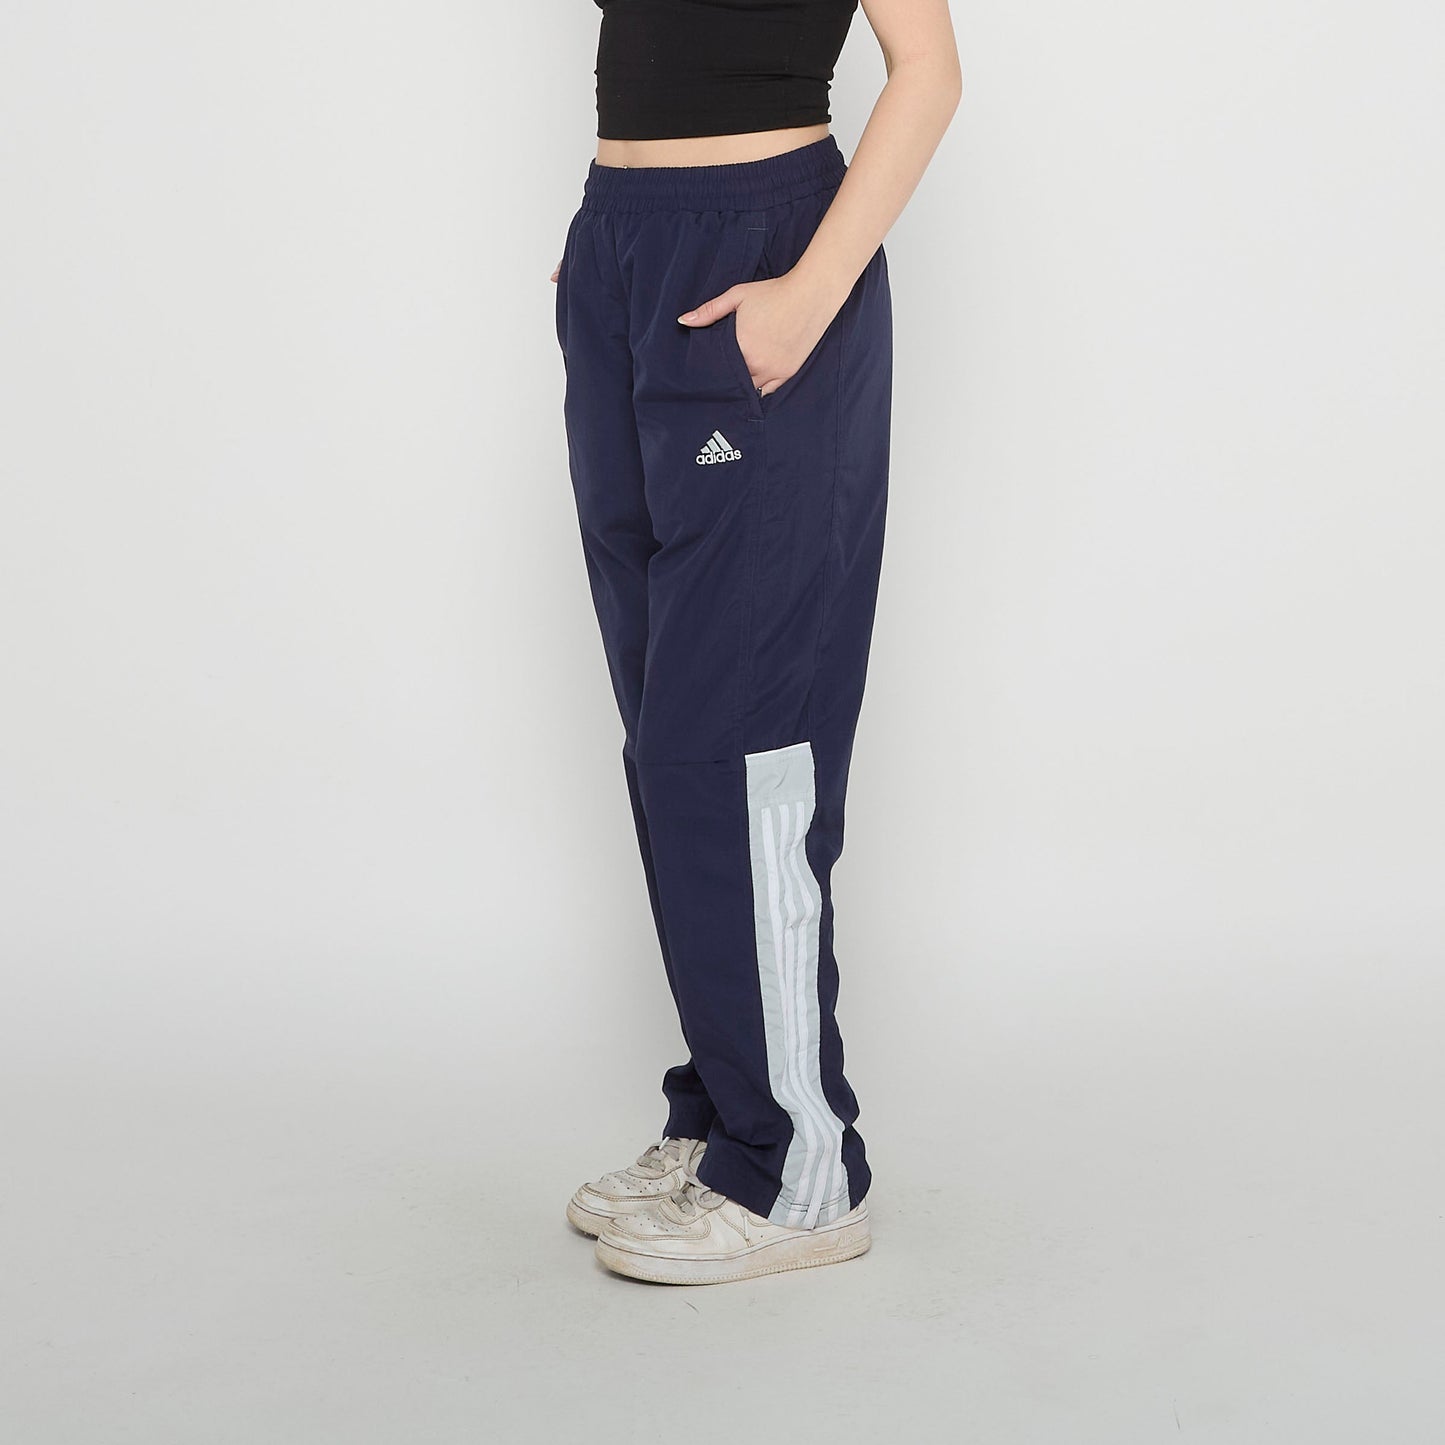 Adidas Trackpants - UK 10